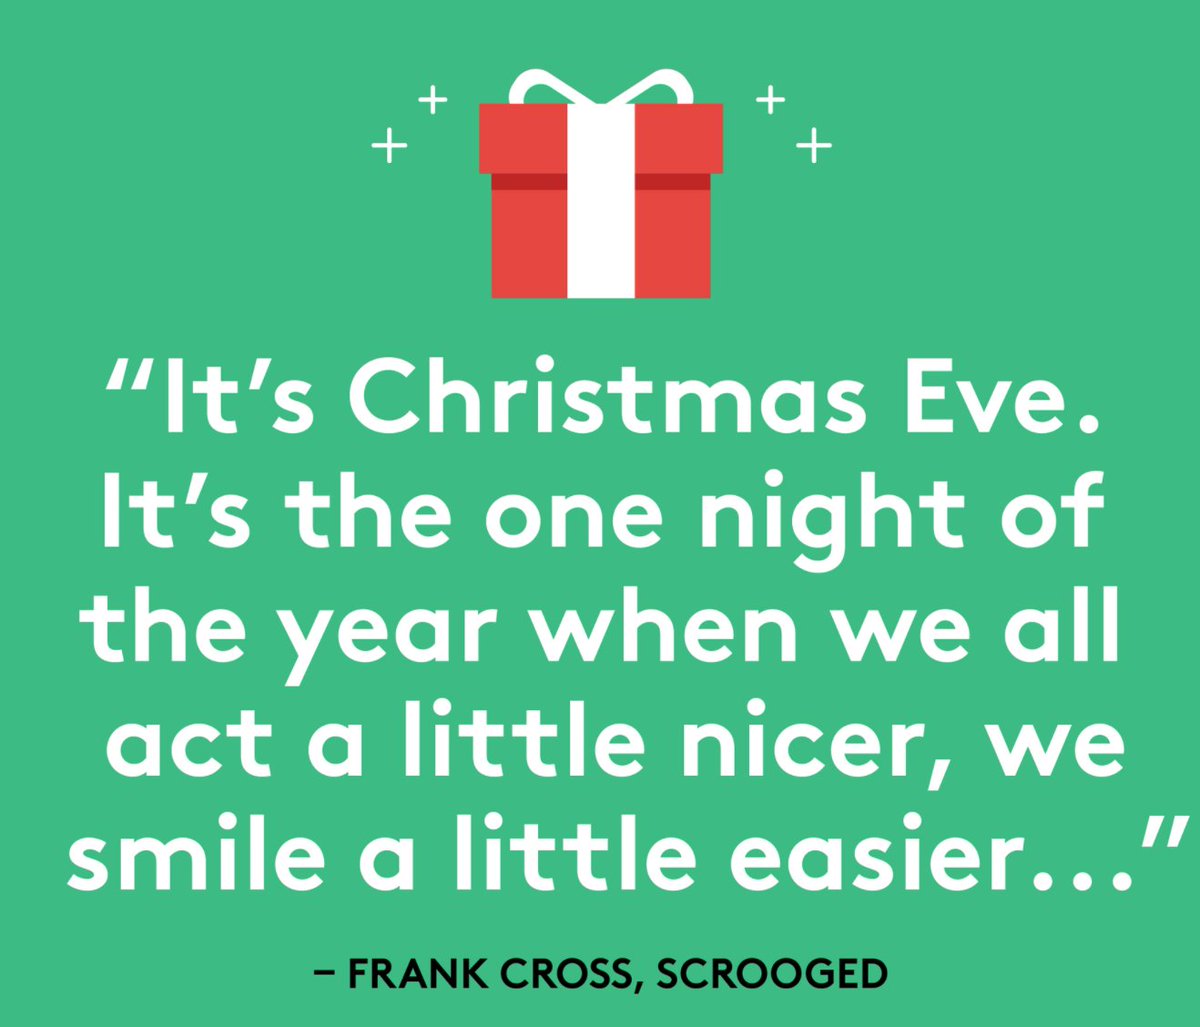 One more sleep until Christmas! 🎅🎄☃

#christmaseve #christmaseve2021 #scrooged #christmasmovies